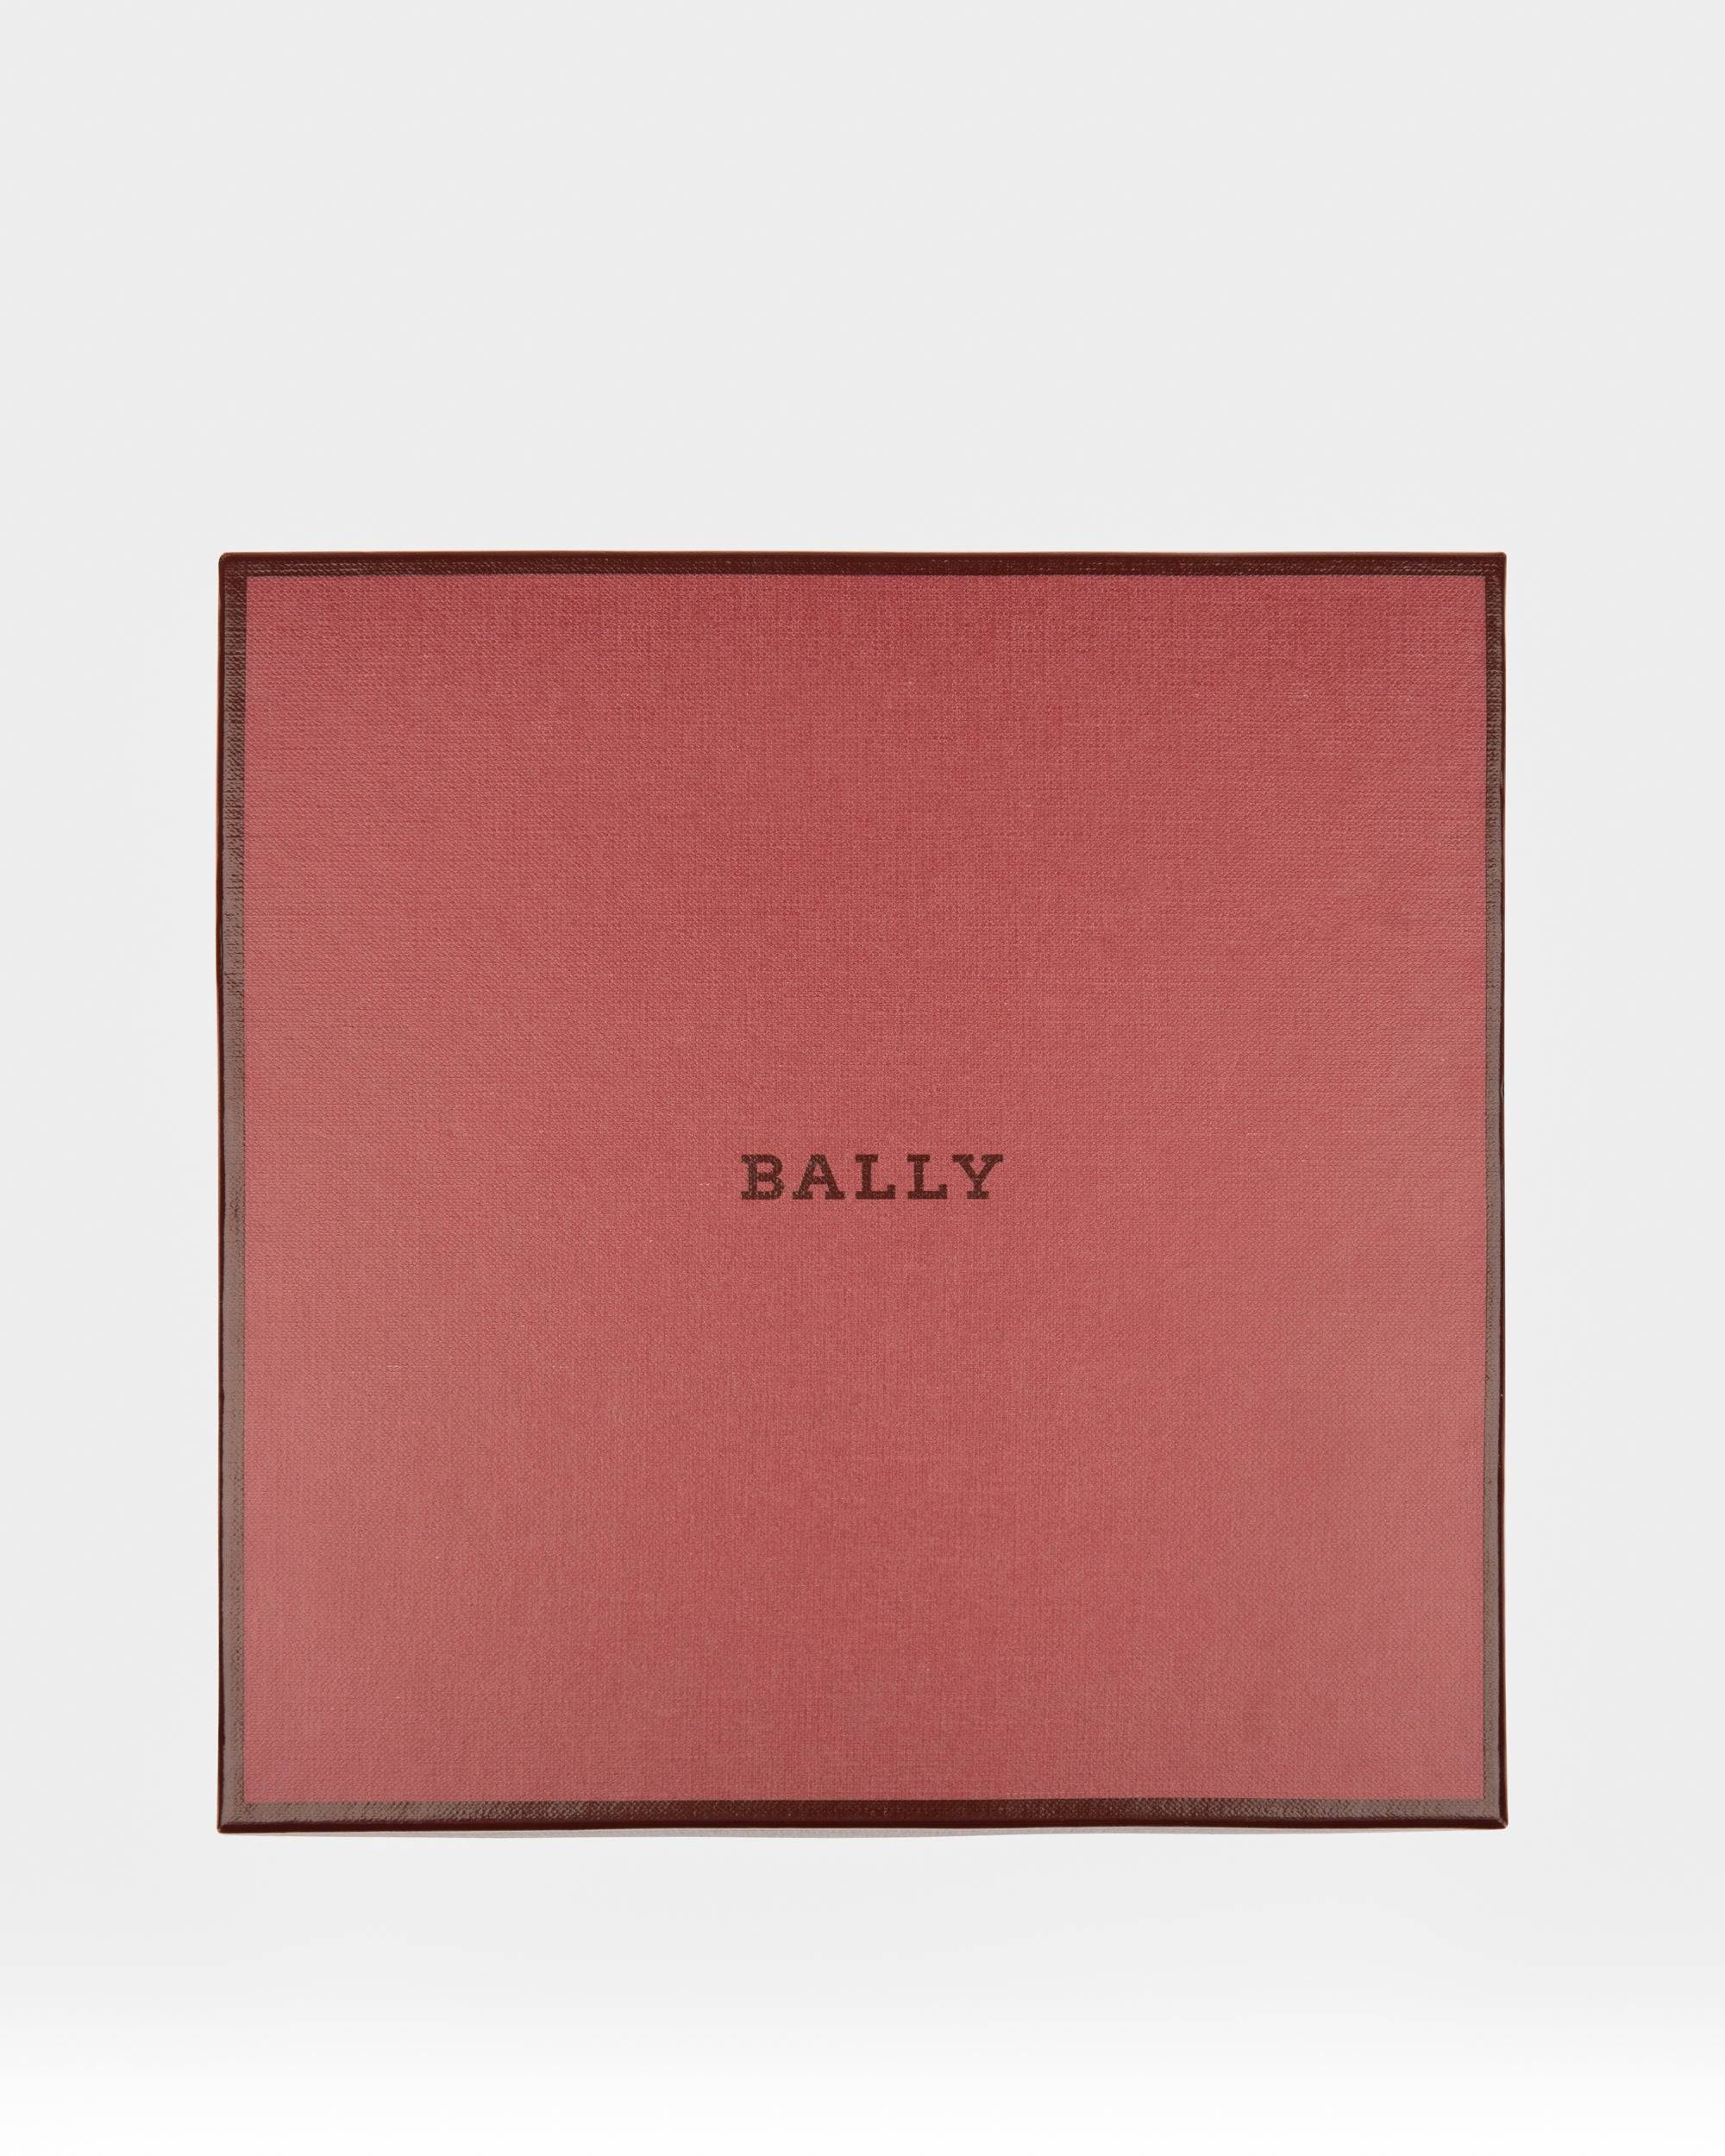 BALLY GIFT BOX - Bally - 02